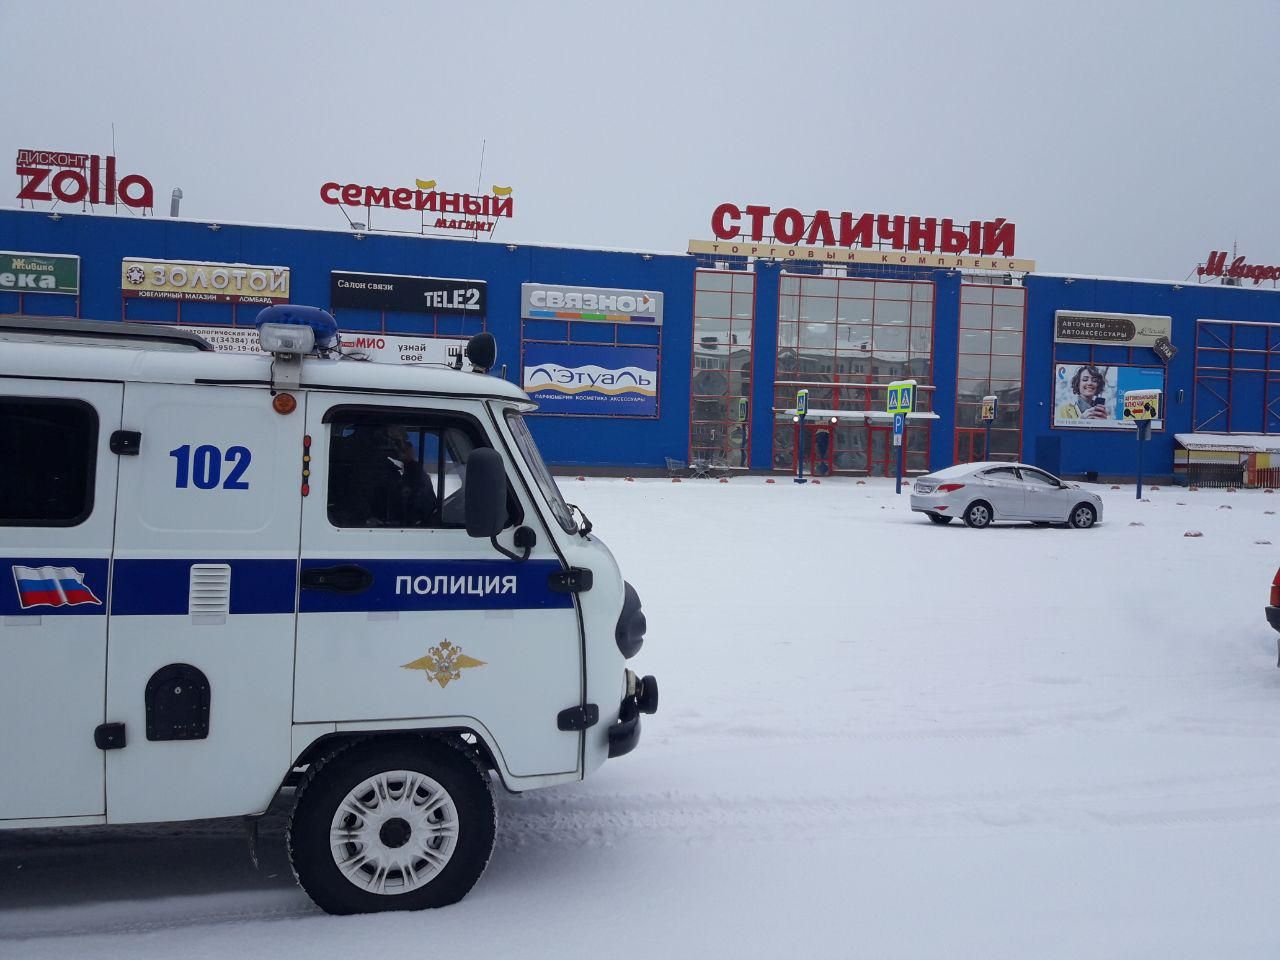 В Краснотурьинске эвакуируют ТЦ "Столичный". Поступил звонок о минировании здания